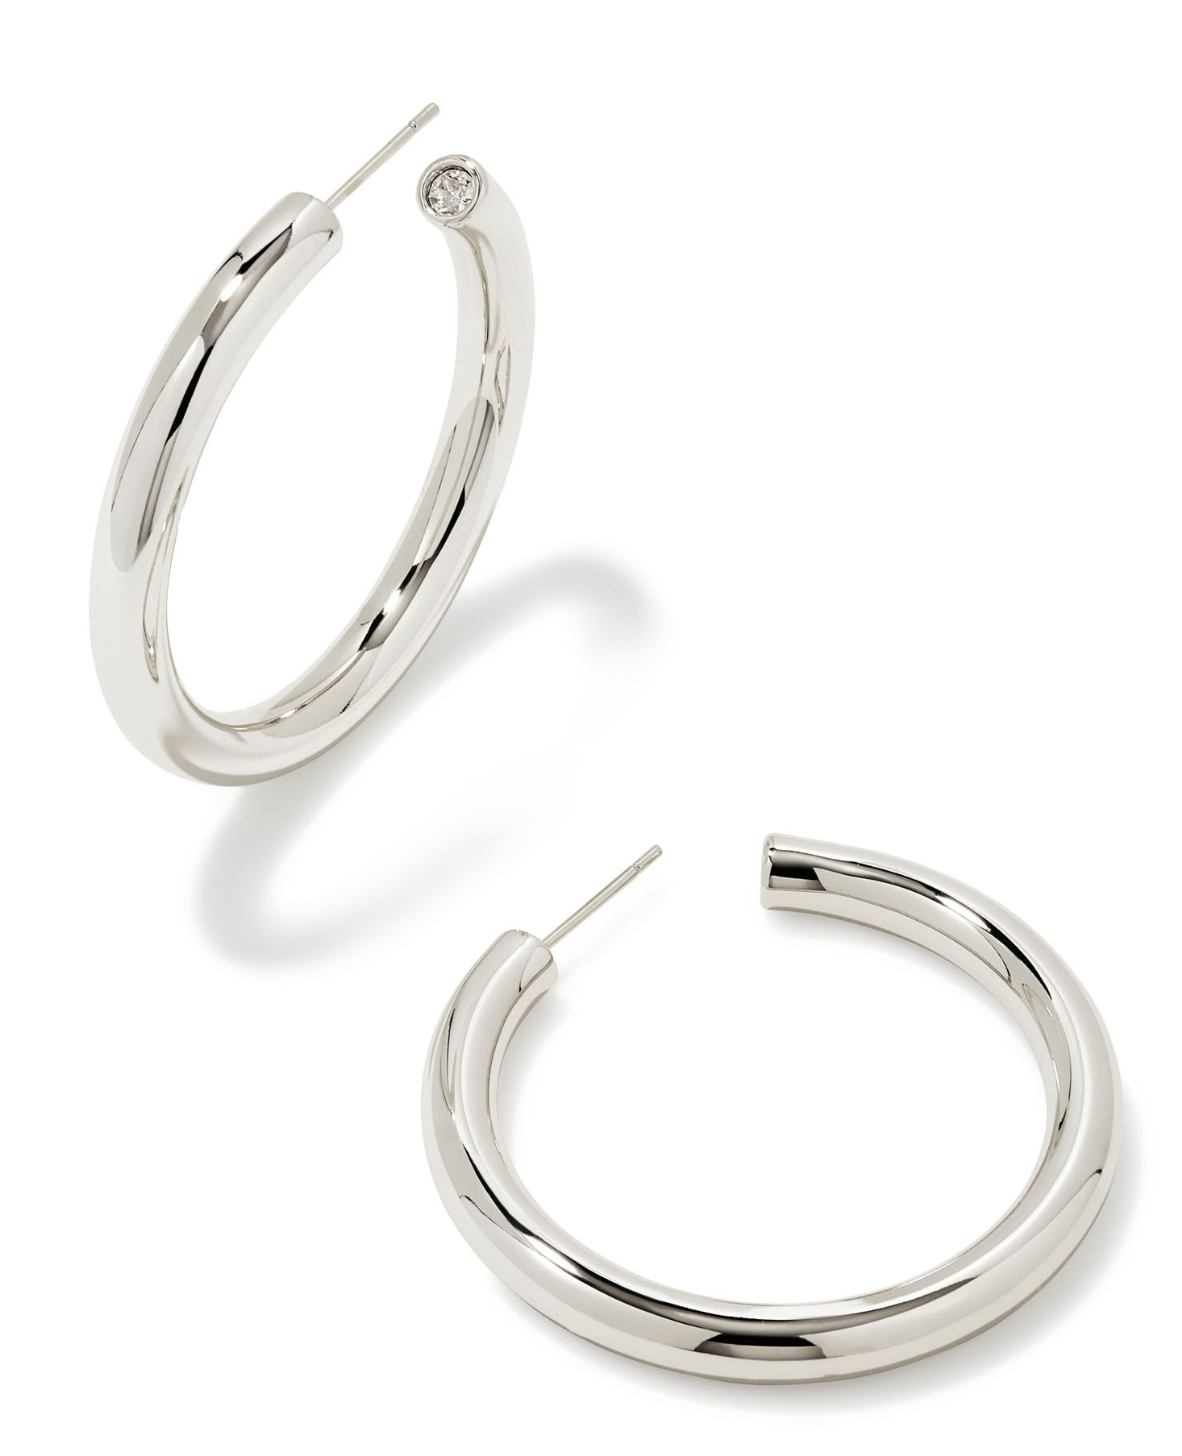 Colette Large Hoop Earrings in Silver | KENDRA SCOTT - The Street Boutique 